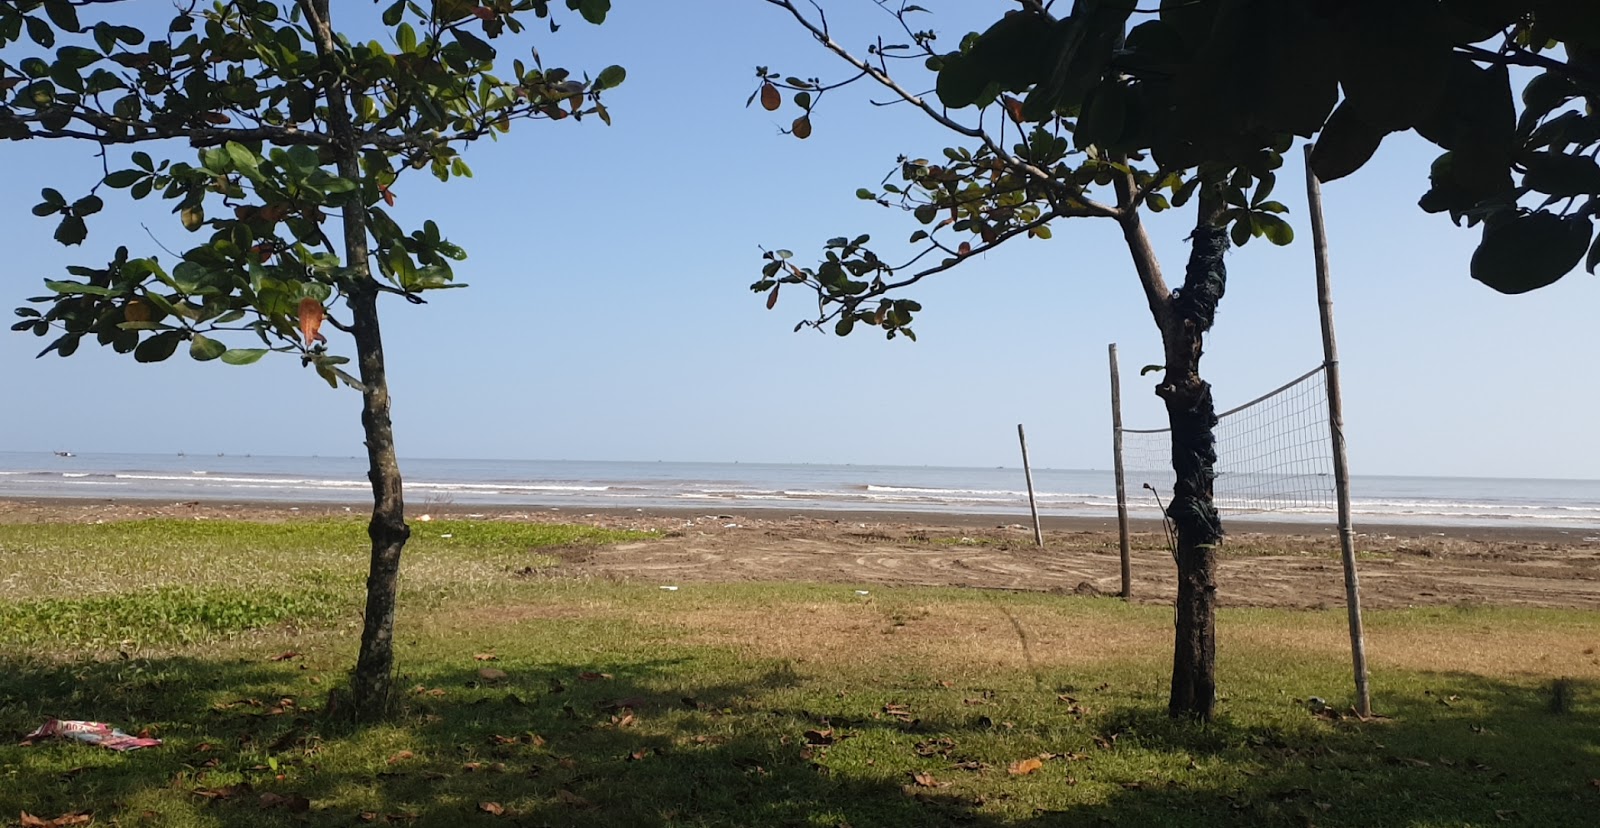 Zdjęcie Dien Thanh Beach - popularne miejsce wśród znawców relaksu